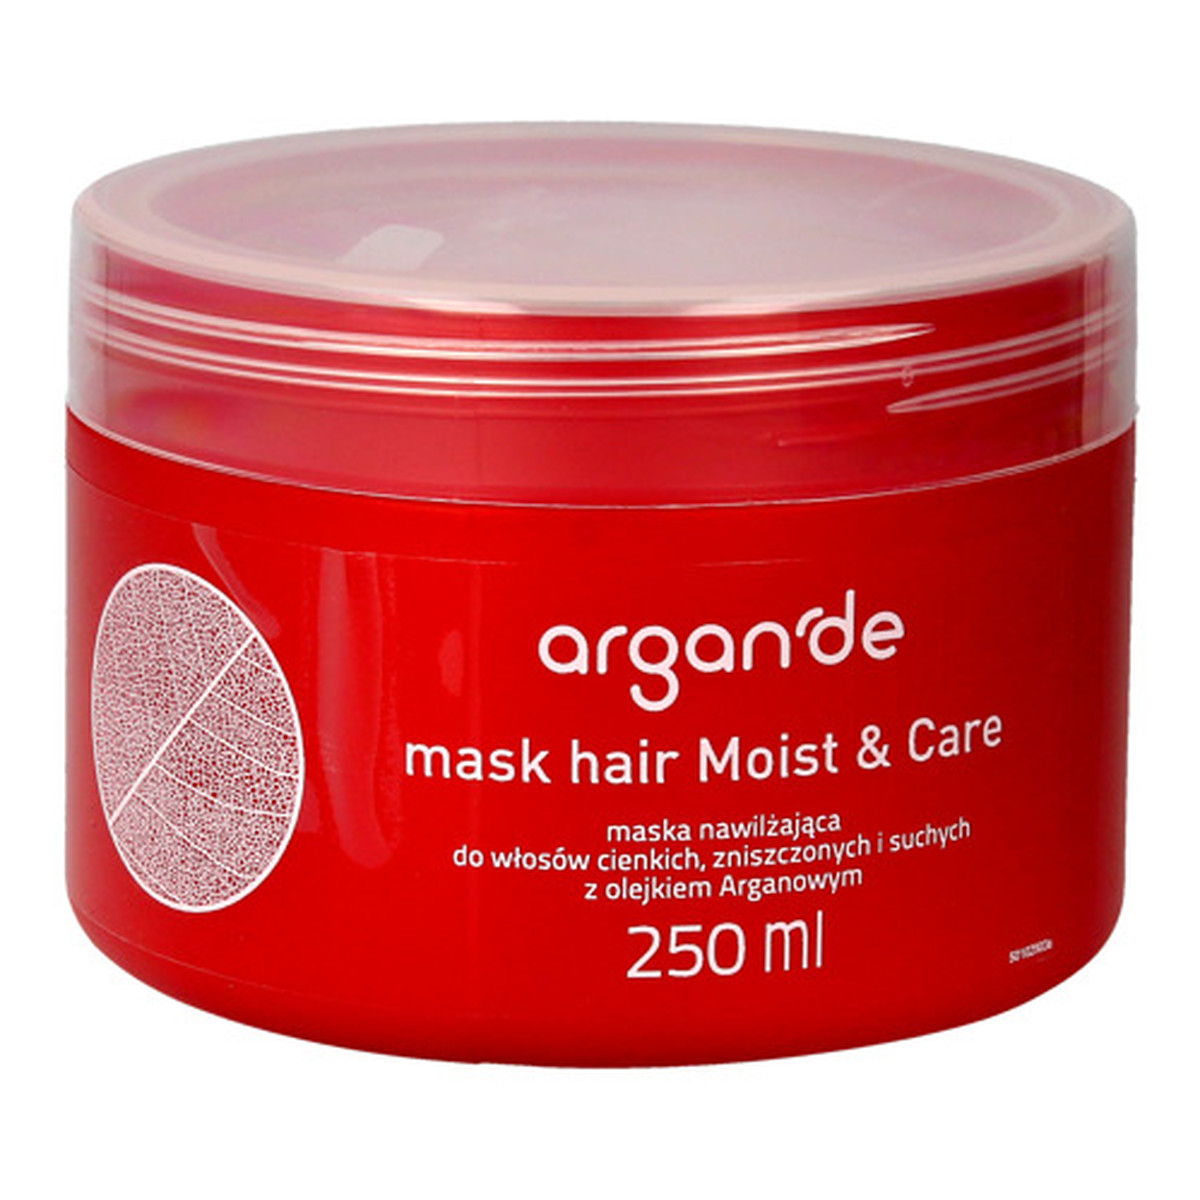 Stapiz Argan'de Moist & Care Mask Nawilżająca maska z olejkiem arganowym do włosów cienkich, zniszczonych i suchych 250ml